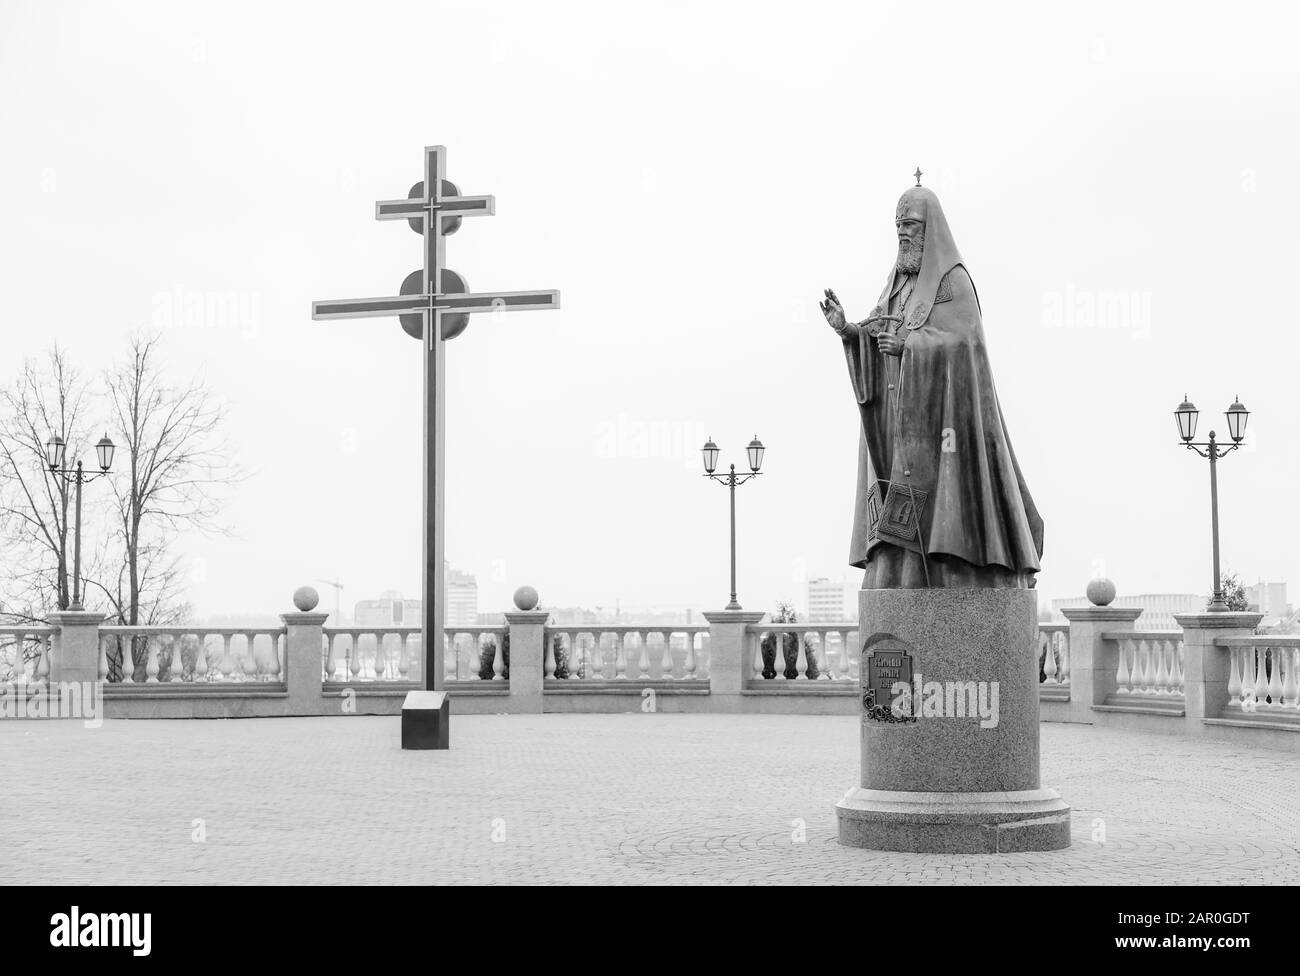 Vitebsk, BIÉLORUSSIE - 21 FÉVRIER 2016 : monument au Patriarche Alexy II près de la cathédrale Sainte-Dormition. Vitebsk. Biélorussie Banque D'Images